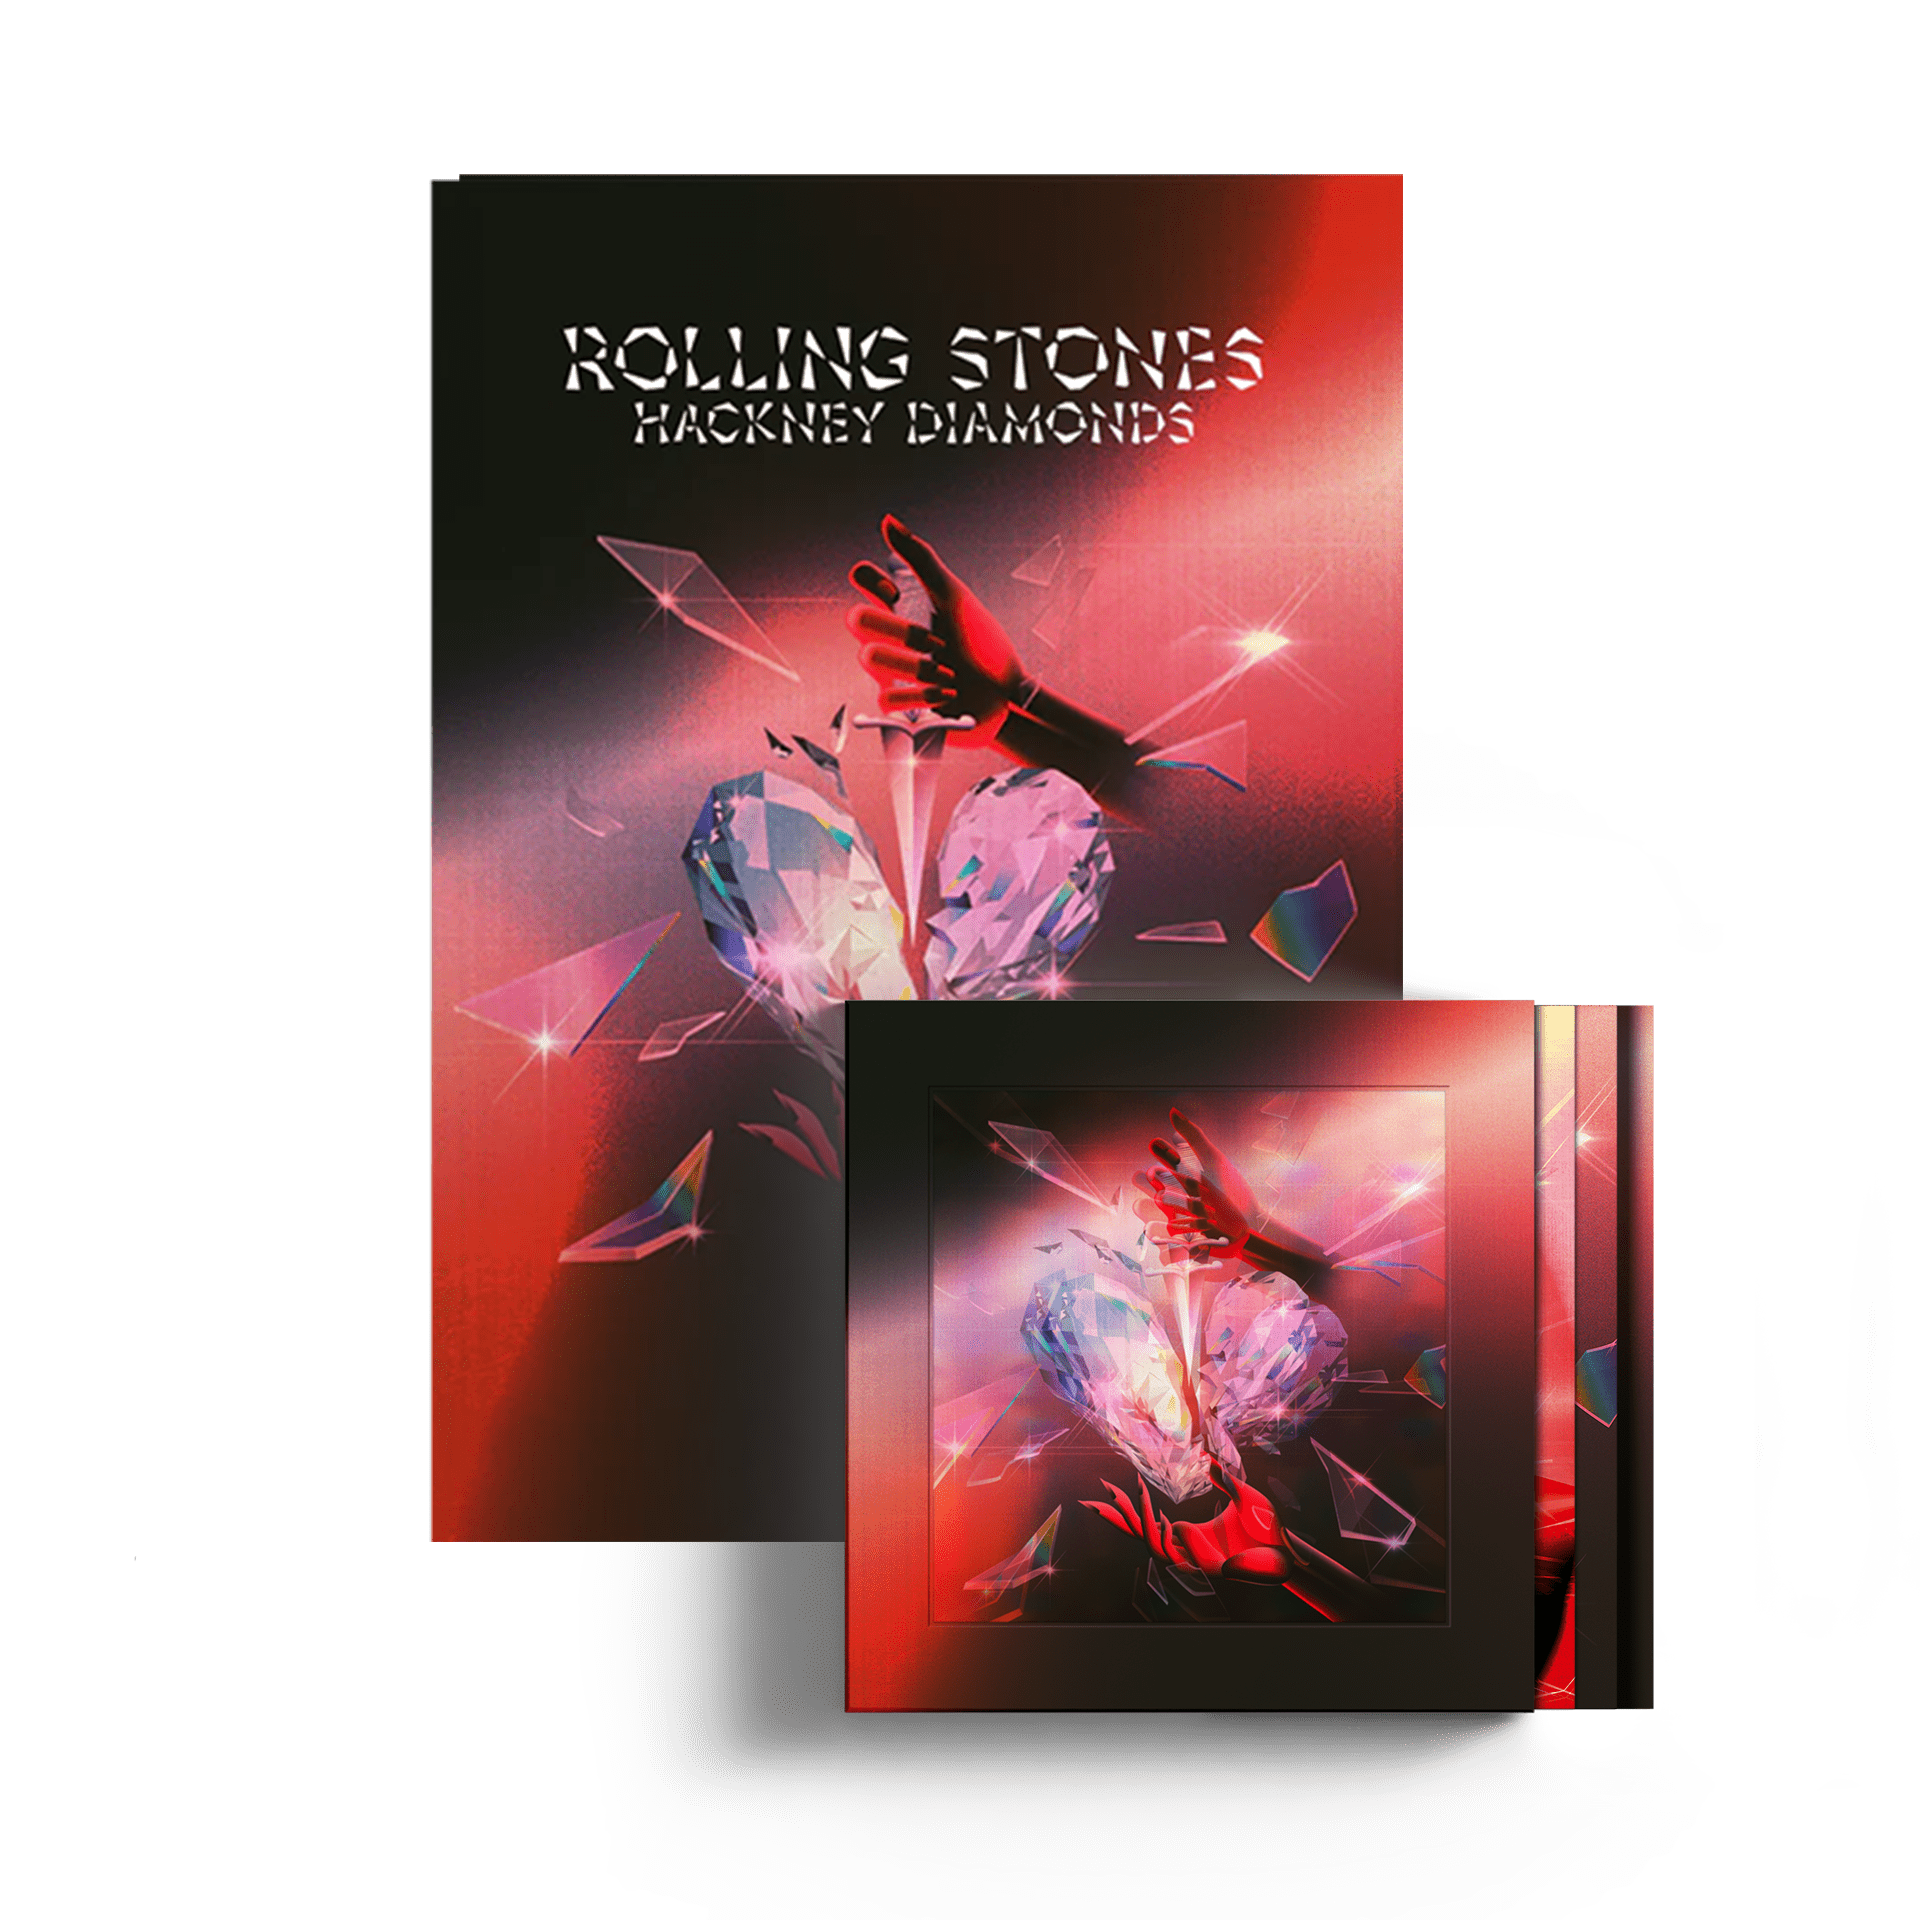 https://images.bravado.de/prod/product-assets/product-asset-data/rolling-stones-the/the-rolling-stones/products/504884/web/402154/image-thumb__402154__3000x3000_original/The-Rolling-Stones-Hackney-Diamonds-CD-Bundle-zu-bundeln-504884-402154.809c5674.png